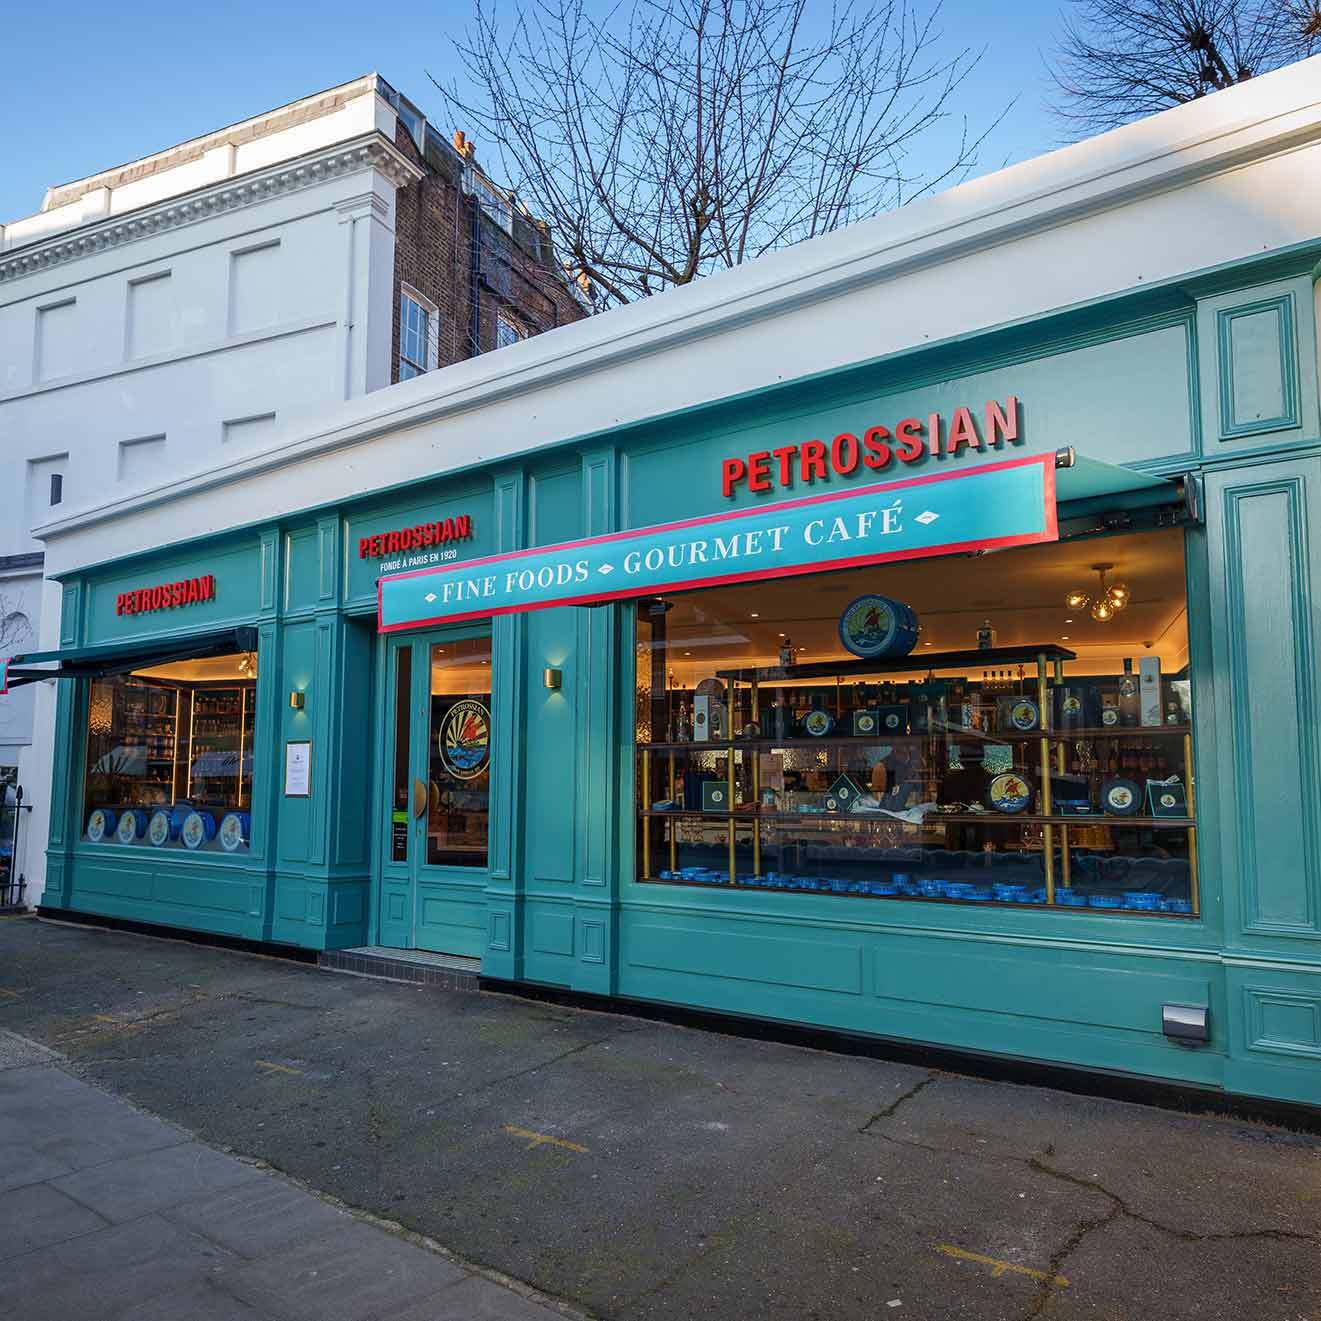 Boutique Petrossian Londres